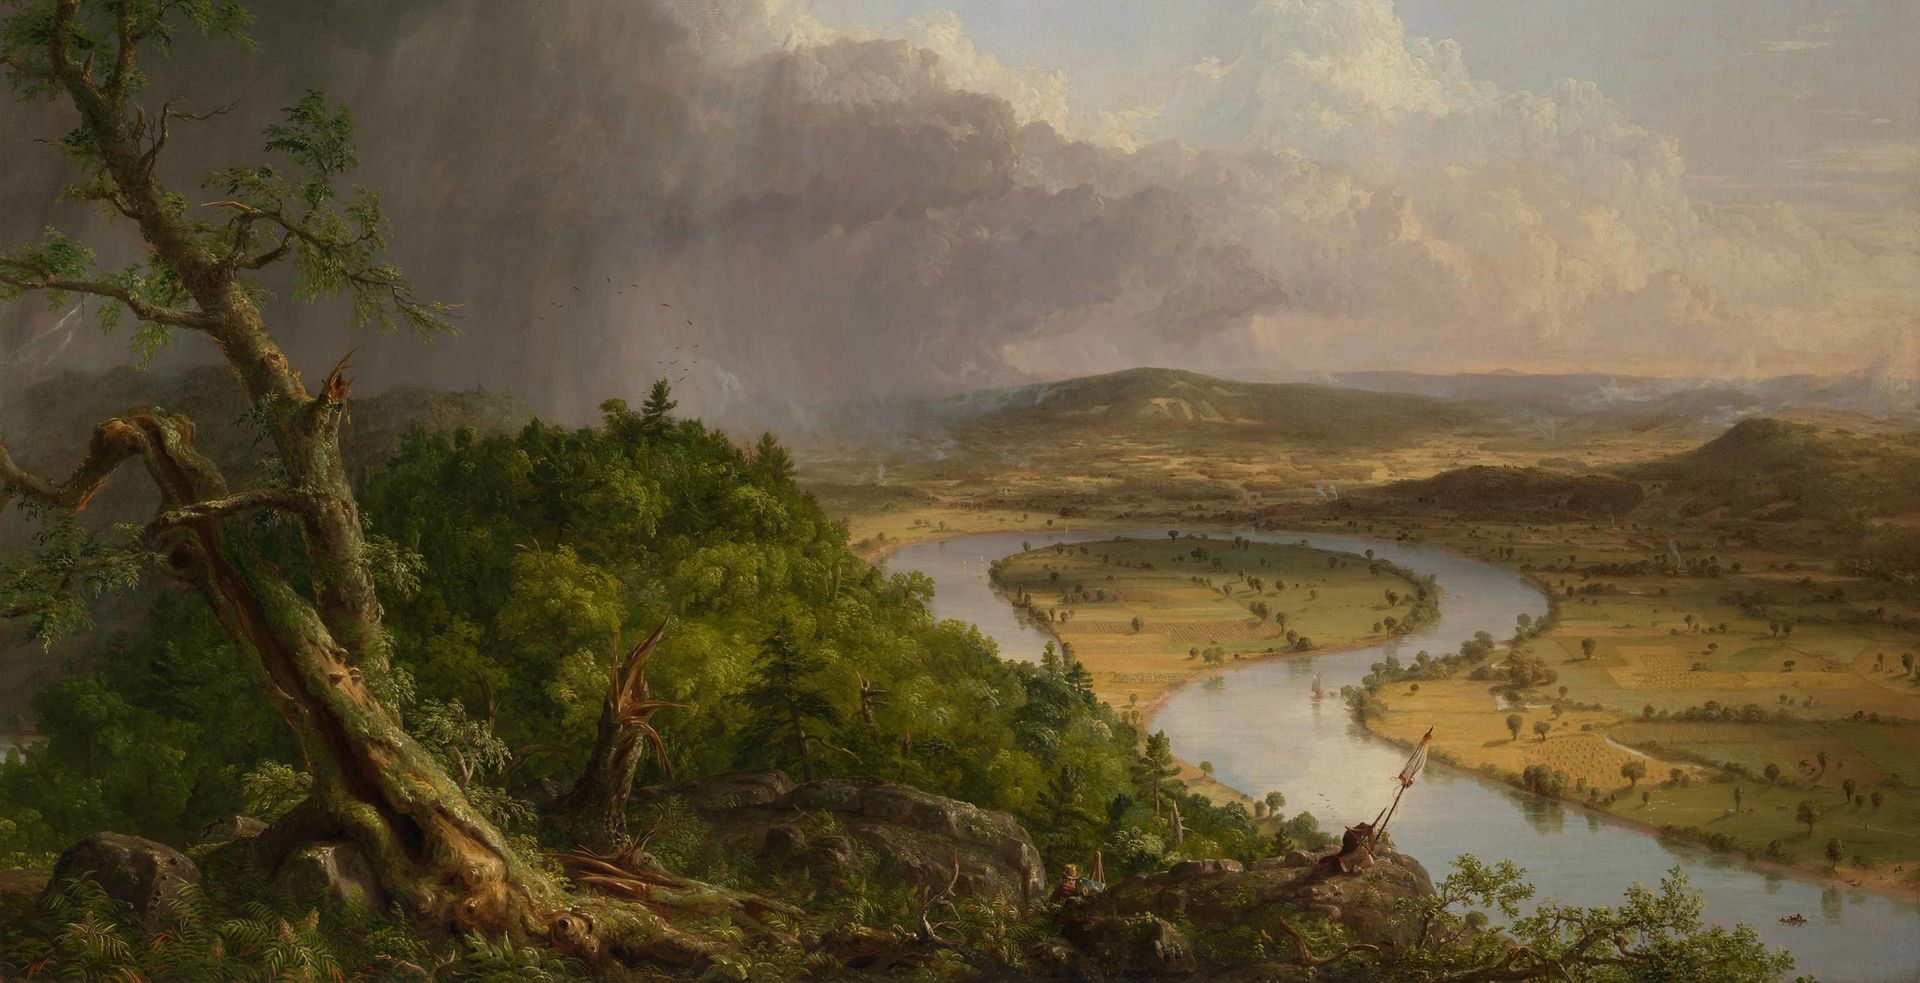 Thomas Cole's landscape painting 